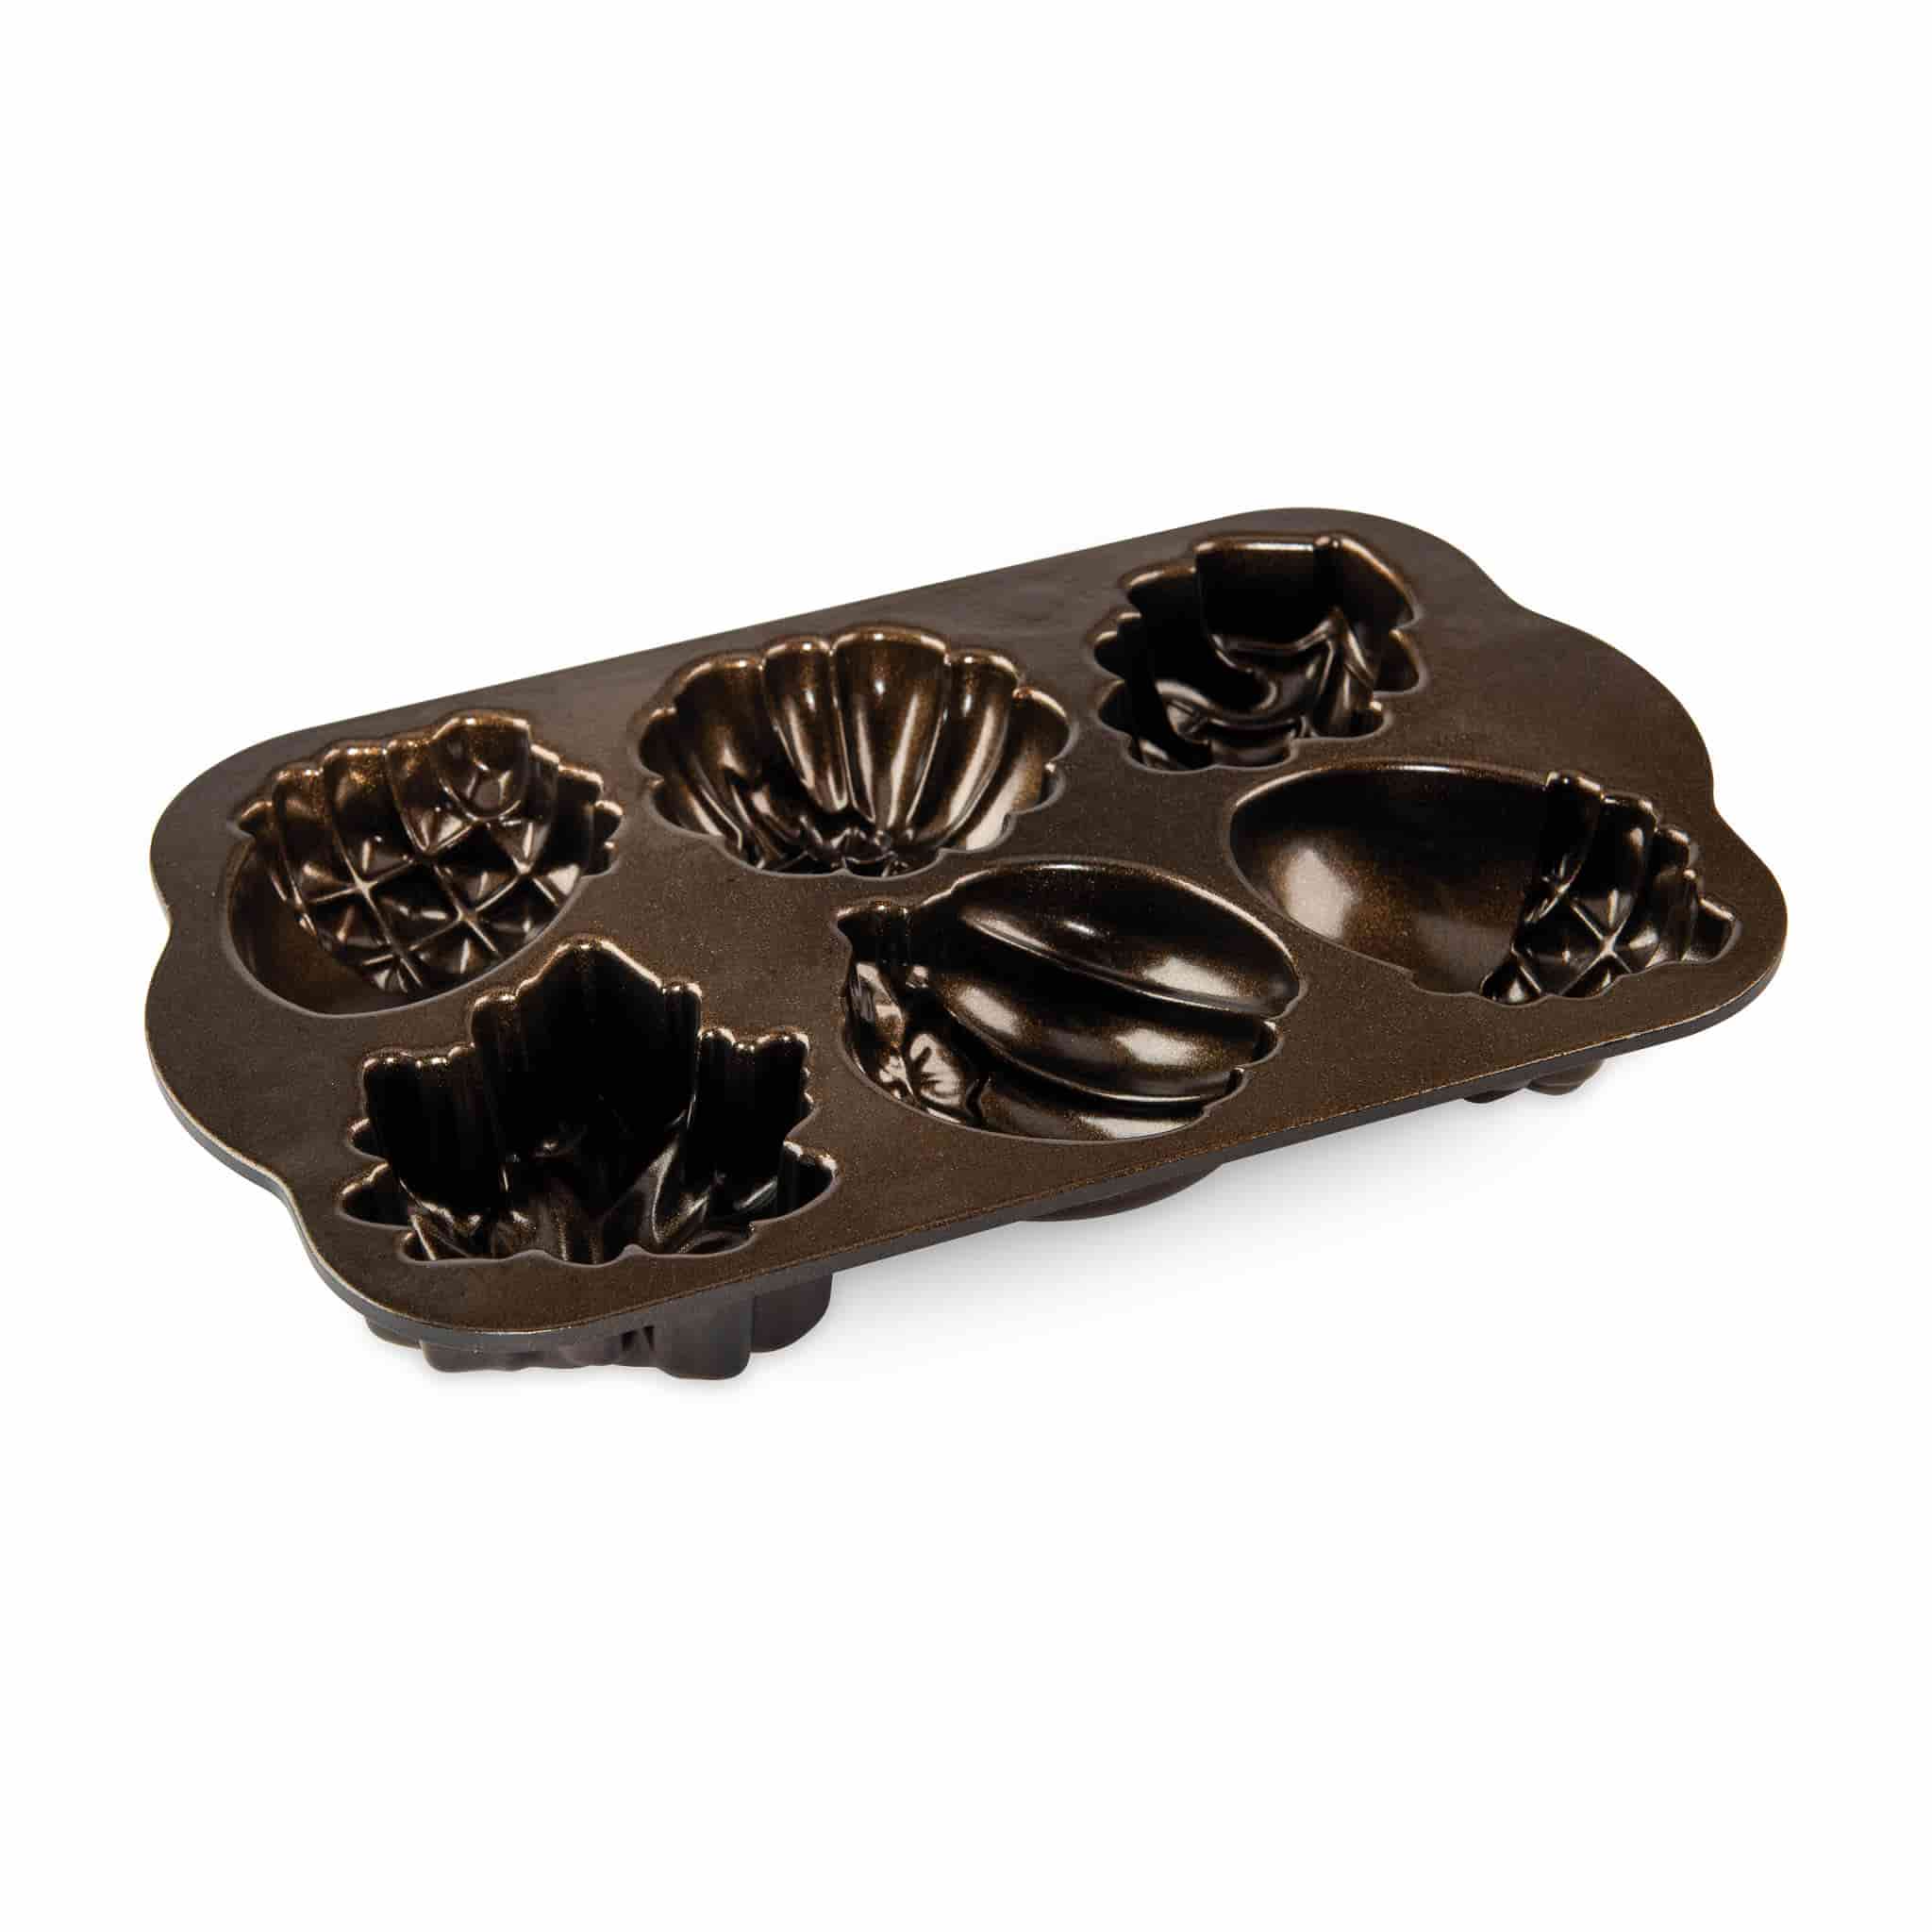 Nordicware Bronze Autumn Treats Cakelet Pan, 709ml